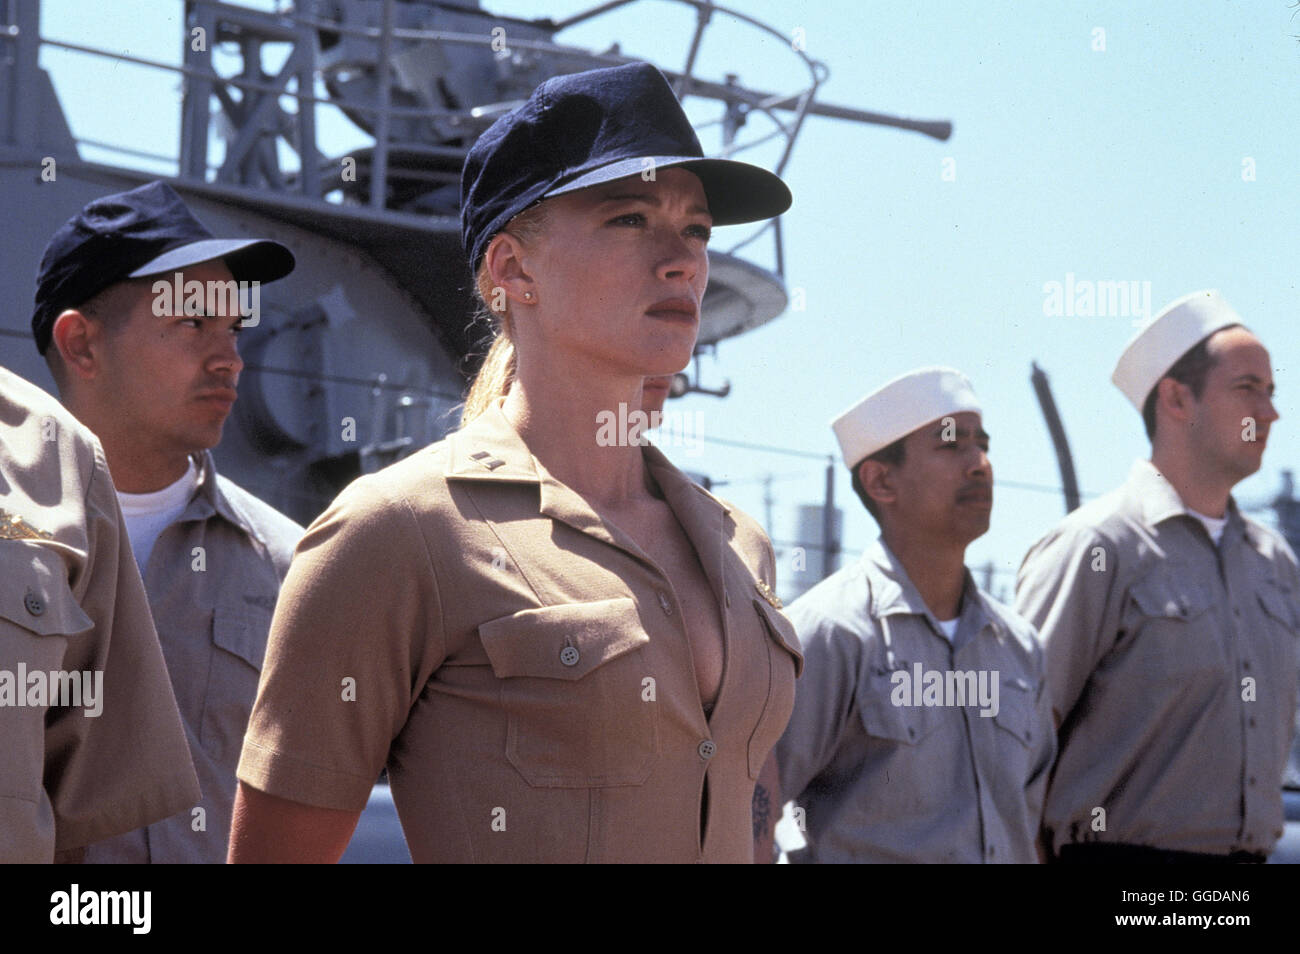 MISSION: ROHR FREI! / Down Periscope USA 1996 / David S. Ward Der begabte Navy-Offizier Thomas Dodge wird wegen seiner skurrilen Eigenheiten seit Jahren bei der längst fälligen Beförderung übergangen.Um ihn endlich loszuwerden, beauftragt ihn Admiral Graham, mit einer unfähigen Crew und einem schrottreifen Diesel-U-Boot in mehrere hypermoderne Militärhäfen einzudringen. Doch der Marineprofi läuft zur Hochform auf. Szene mit LAUREN HOLLY (Emely Lake) Regie: David S. Ward aka. Down Periscope Stock Photo